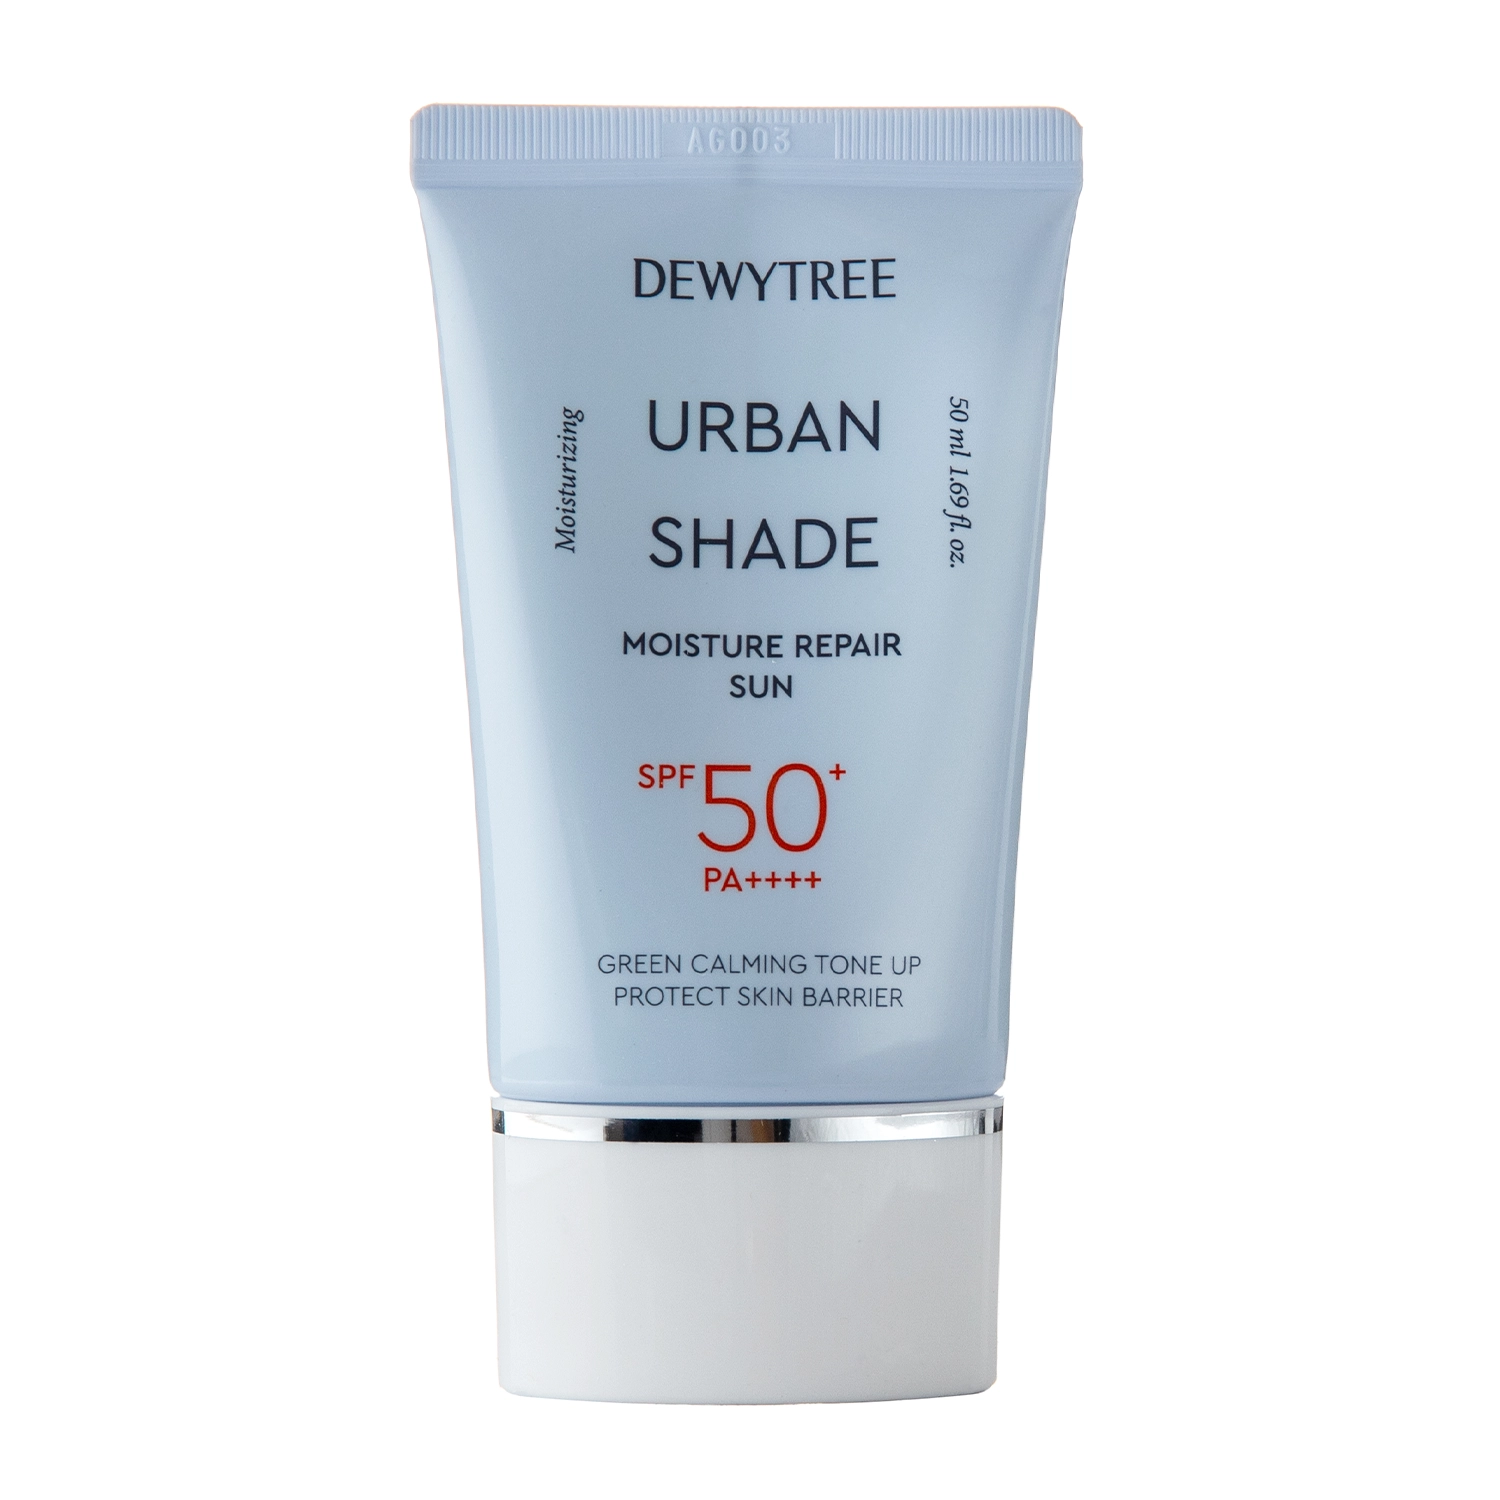 Dewytree - Urban Shade Moisture Repair Sun SPF 50+/PA++++ - Зволожувальний сонцезахисний крем зі змішаними фільтрами - 50ml